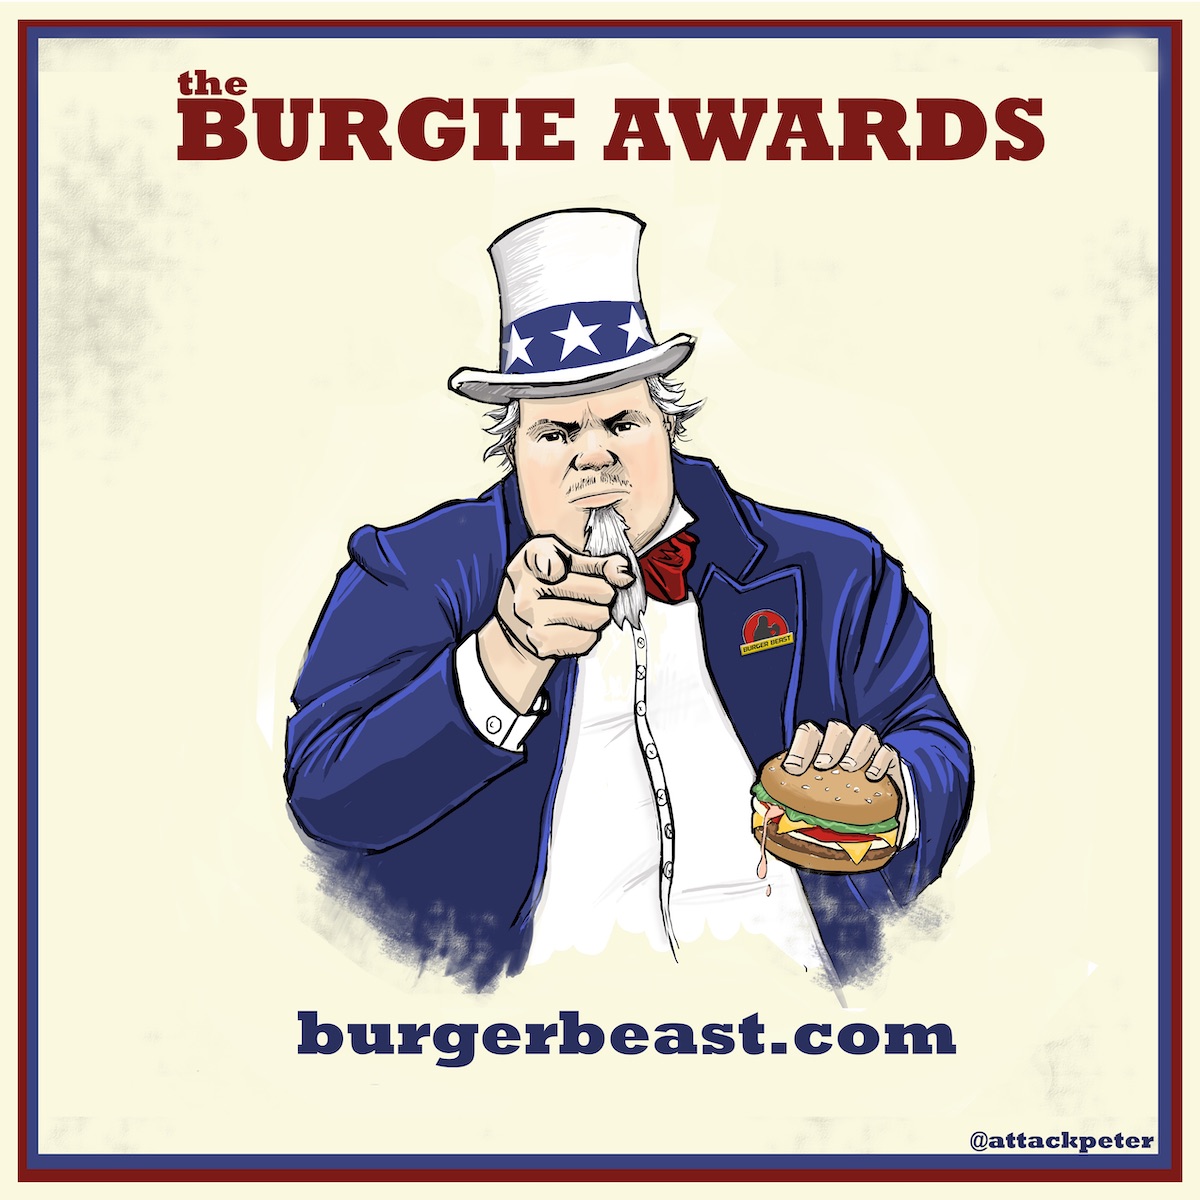 The Burger Beast Burgie Awards